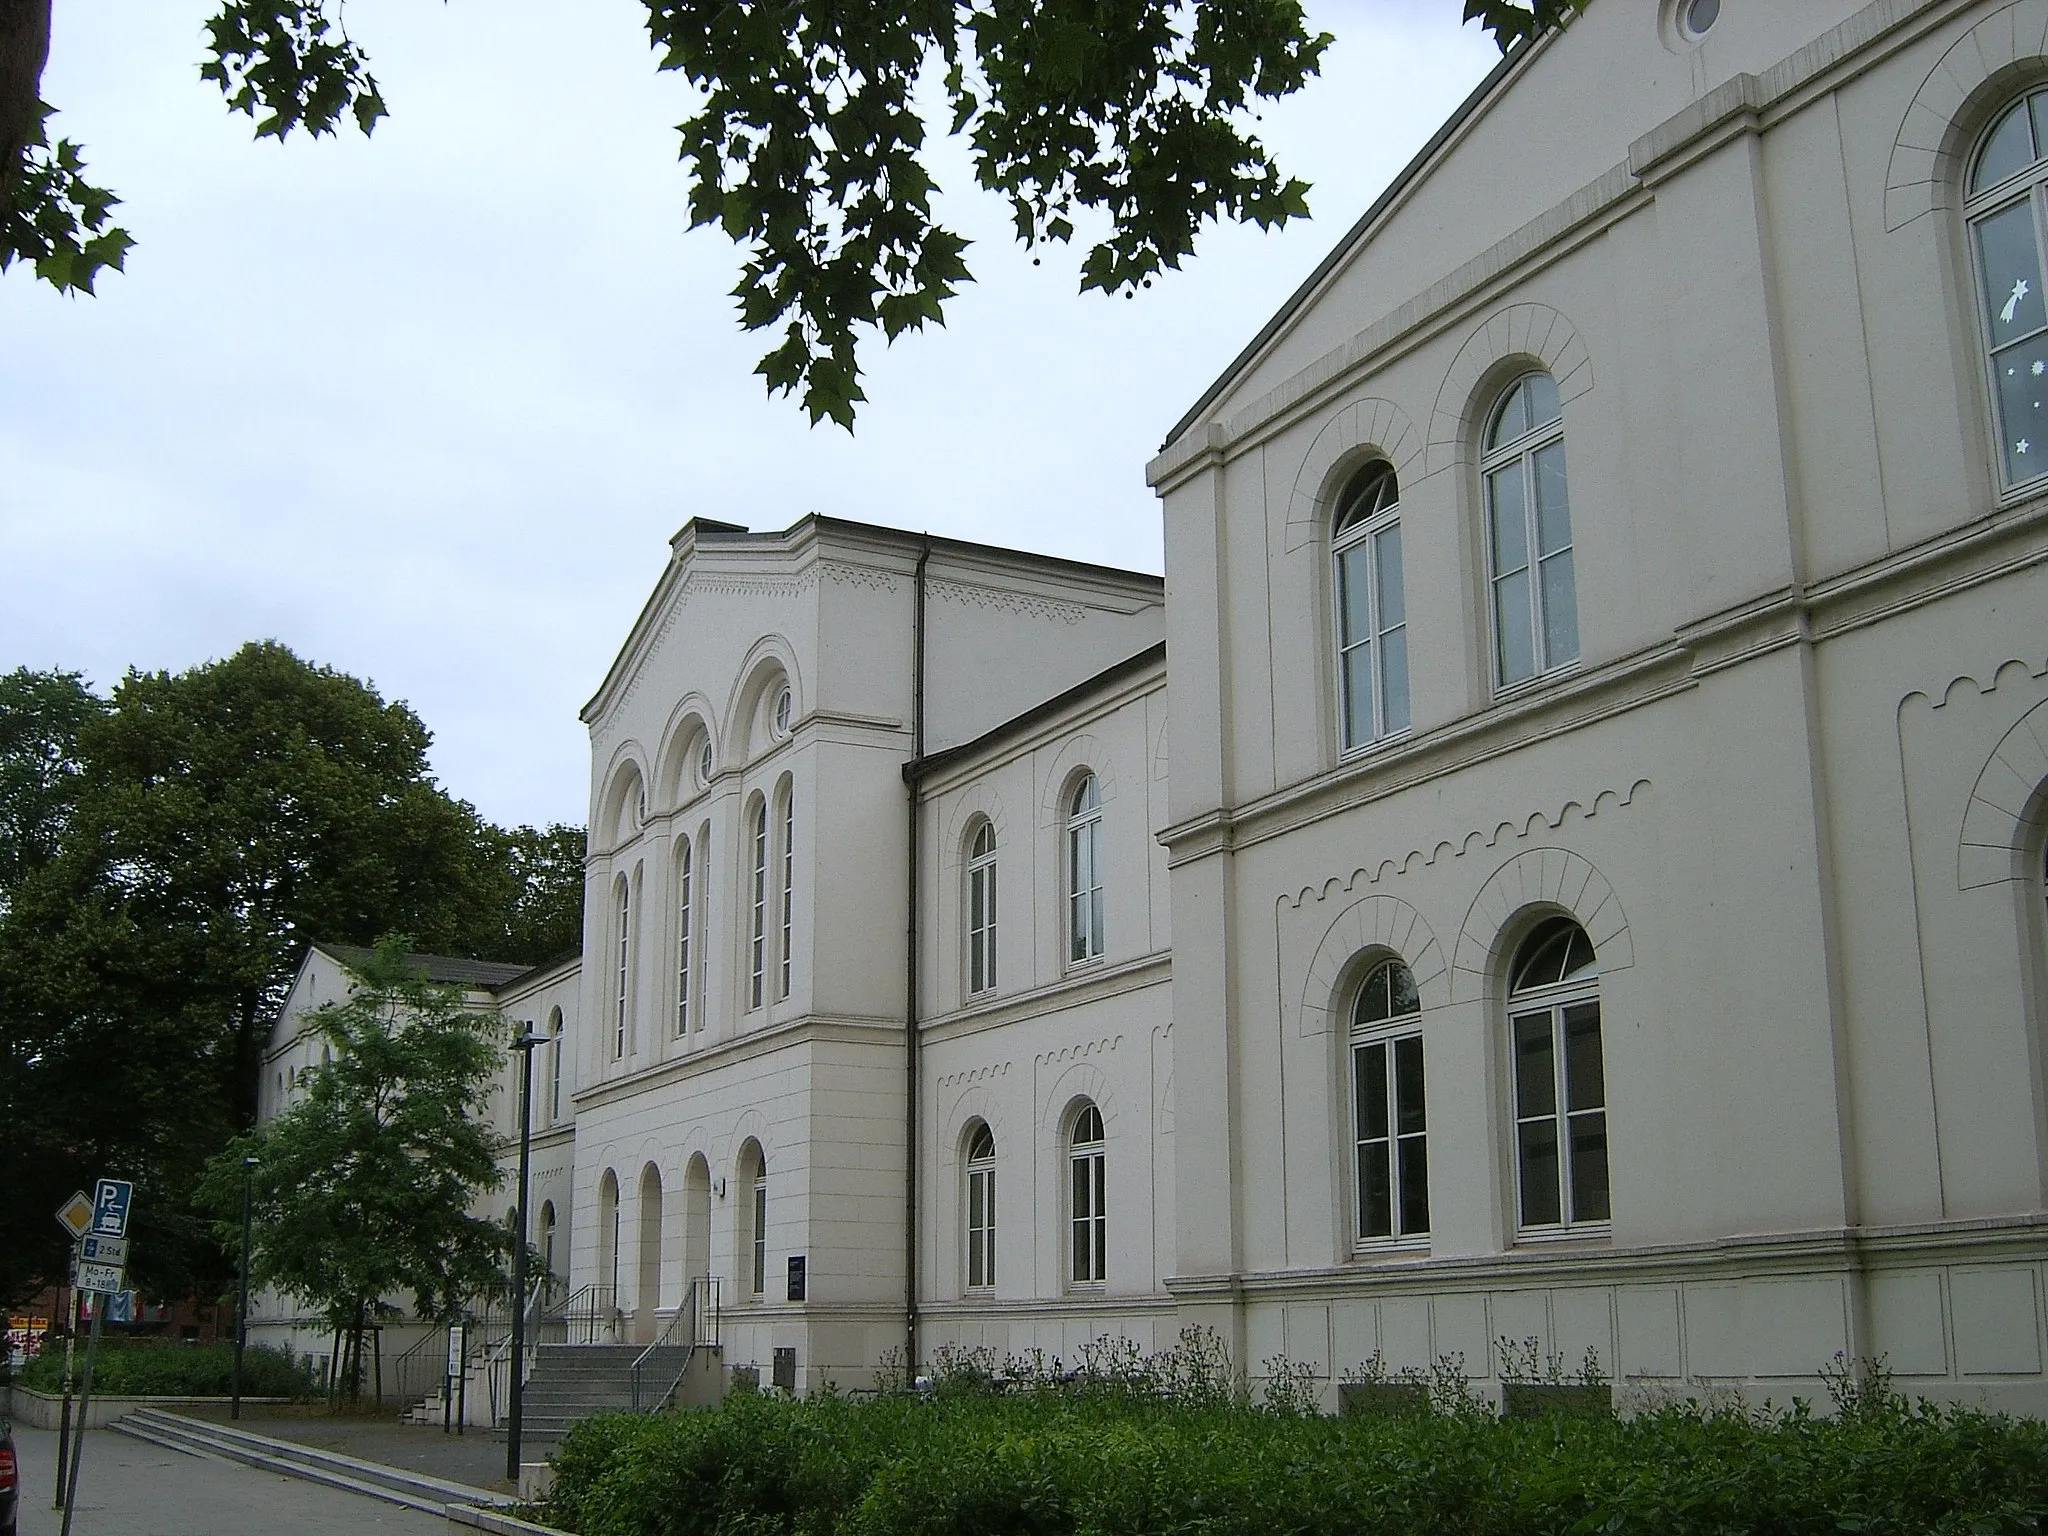 Photo showing: Bildbeschreibung: Hamburg, St.Pauli, ehemaliges Israelitisches Krankenhaus. Erbaut 1841-43 von Johann-Hinrich Klees-Wülbern.
Fotograf: selbst
Datum: 28.6.2006